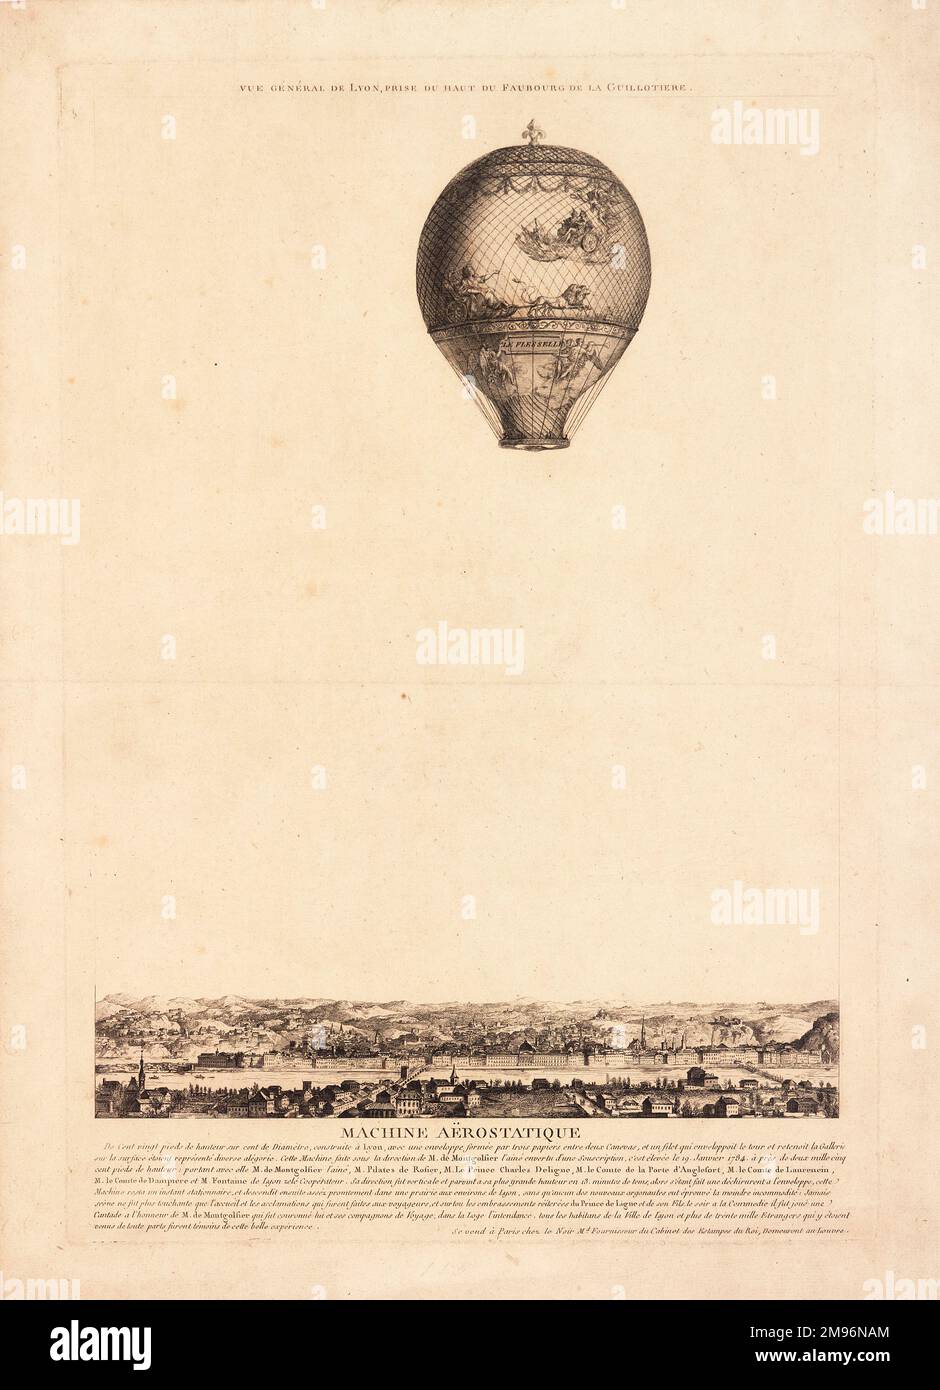 Vue générale de Lyon, France, prise du haut du Faubourg de la Guillotière, montrant le ballon Montgolfier le Flesselle en vol au-dessus de la ville. Banque D'Images